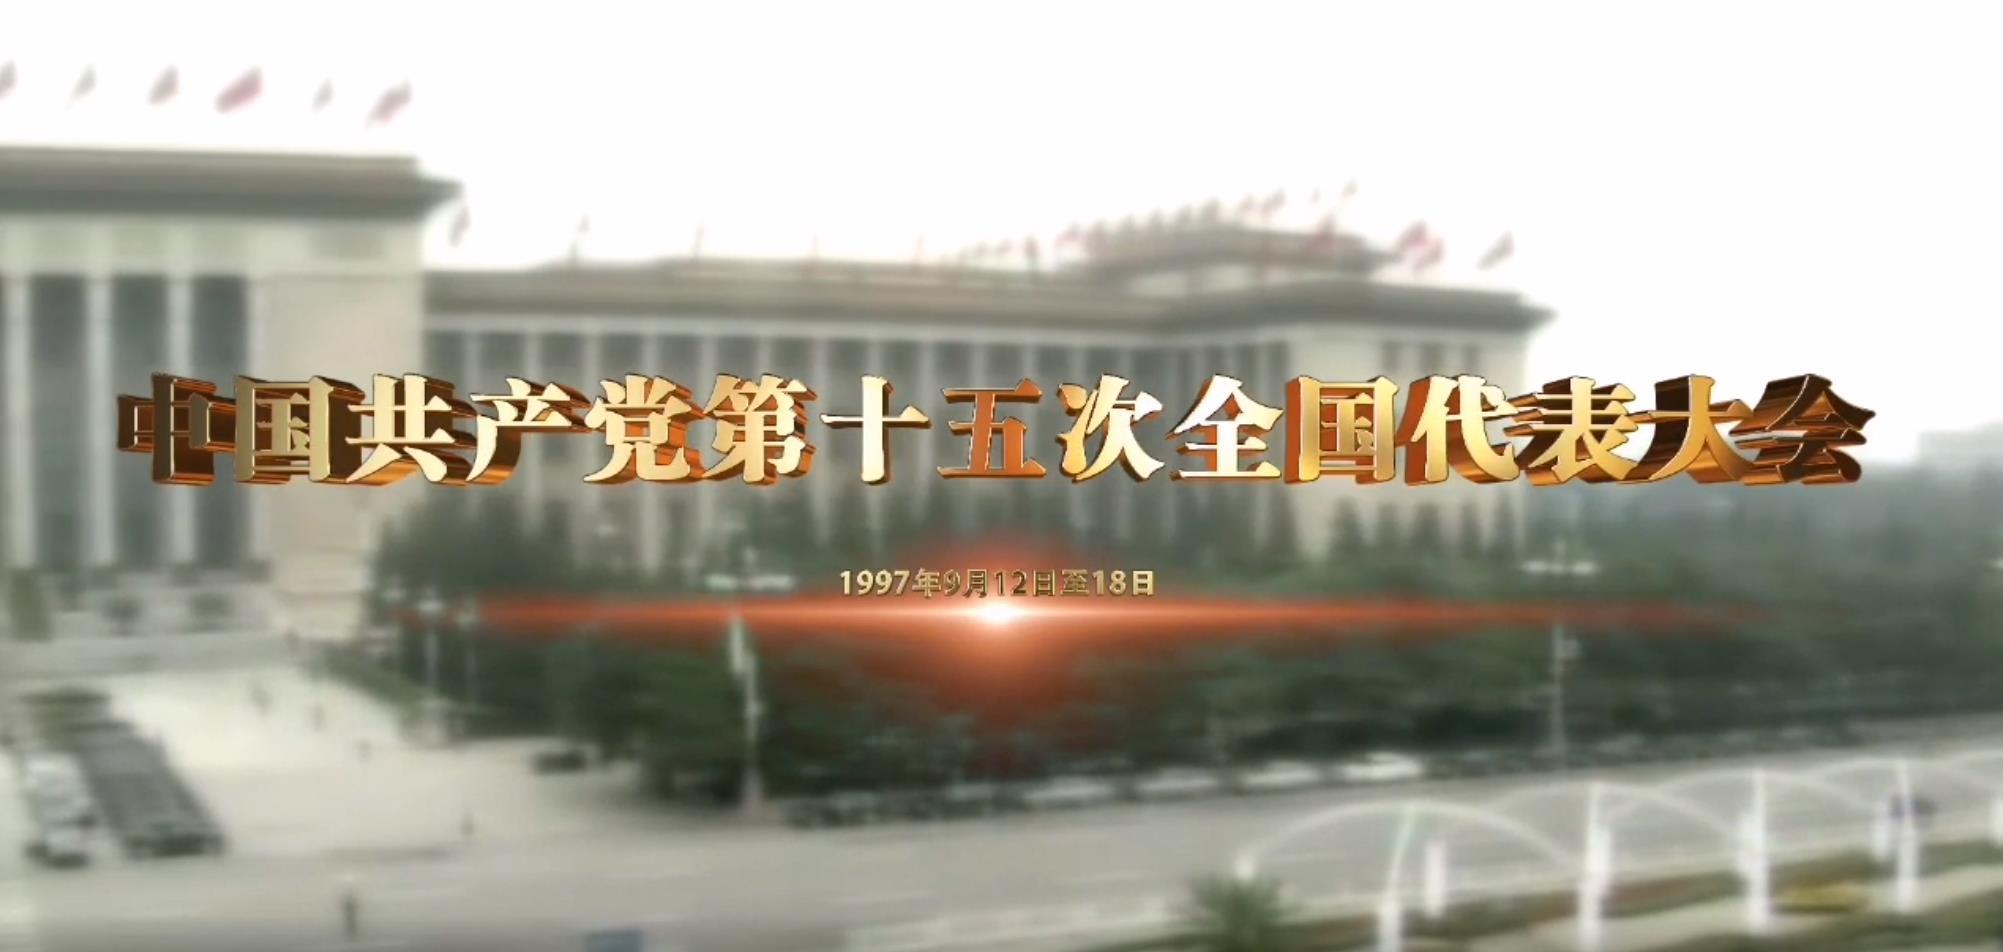 《党史上的重要会议》:中国共产党第十五次全国代表大会